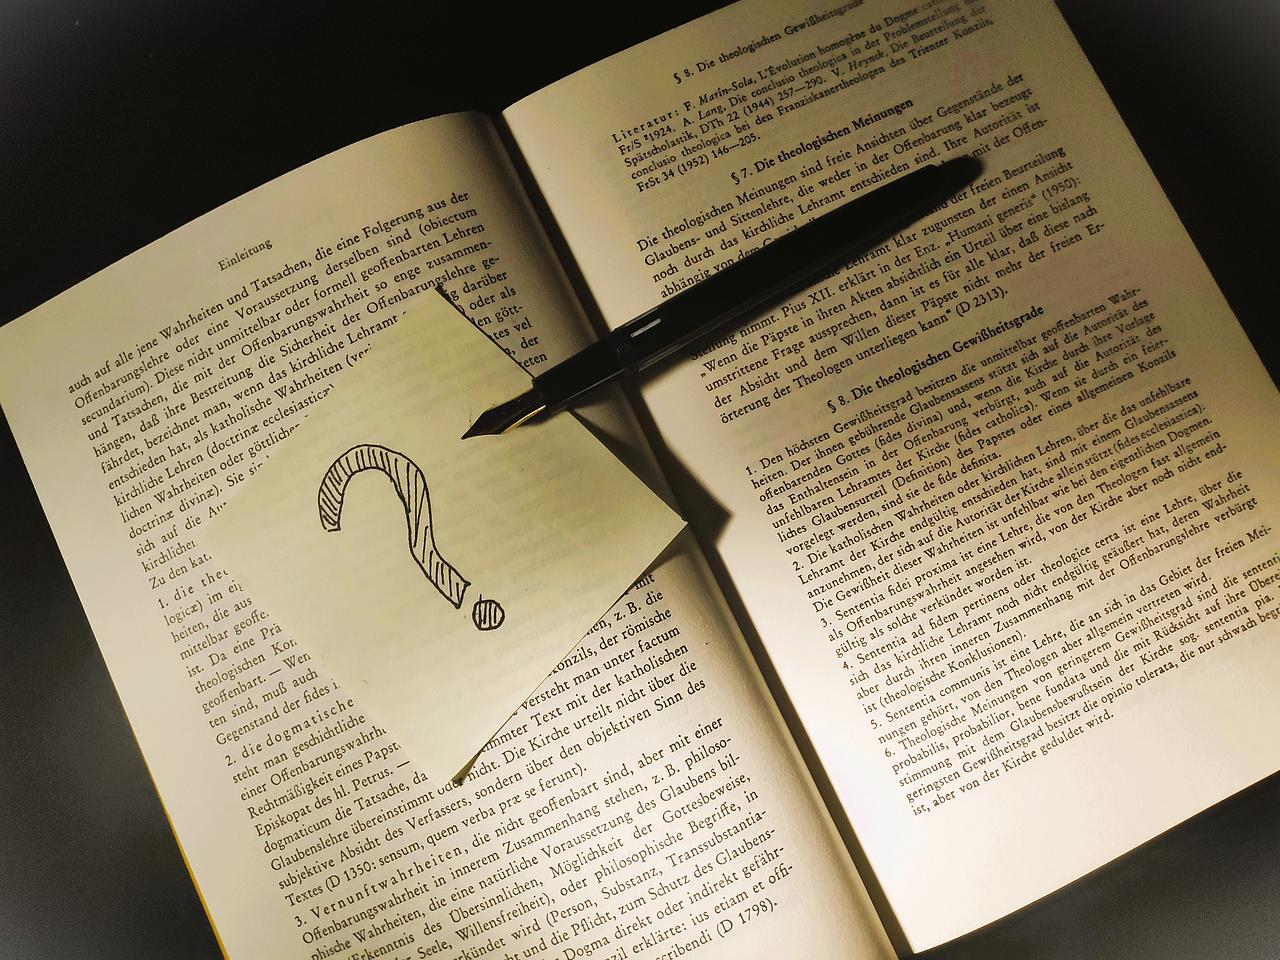 Ein Zettel mit gezeichnetem Fragezeichen und Füllfederhalter auf einem augeschlagenen Buch.